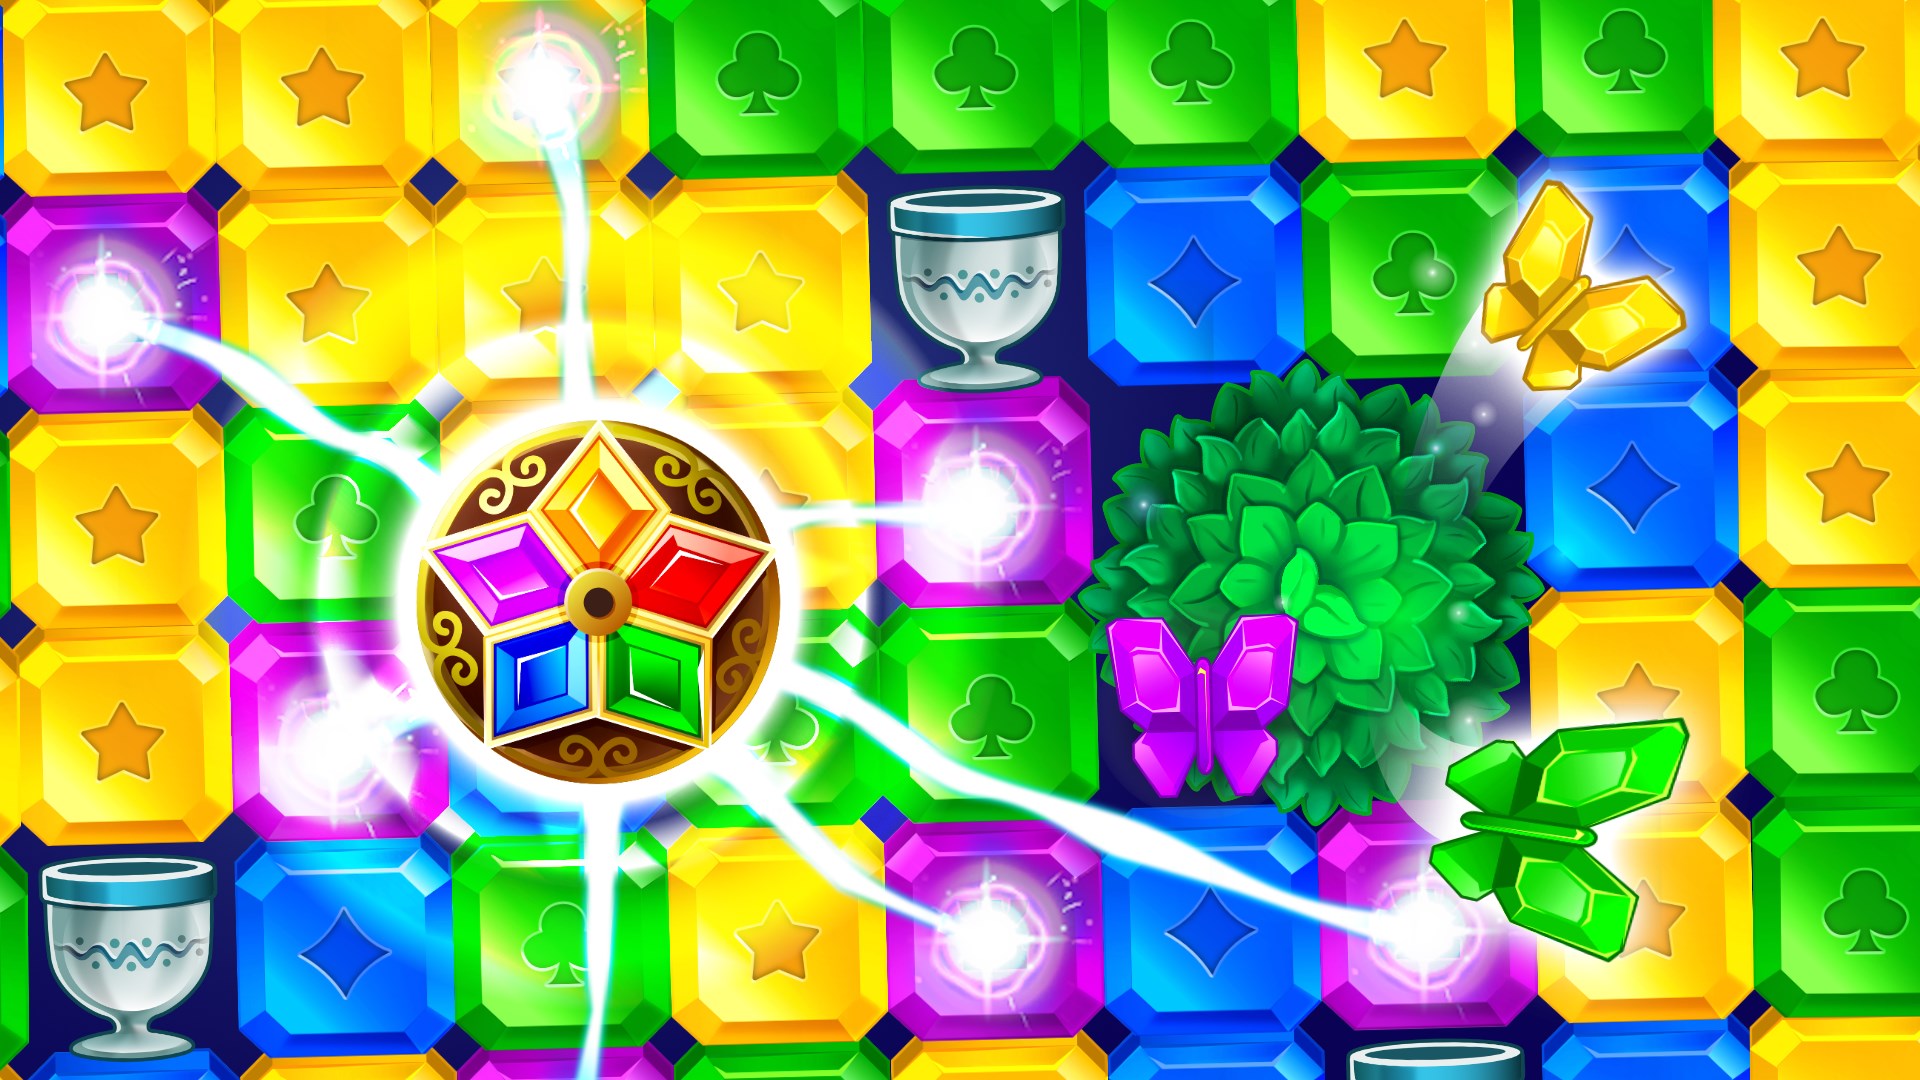 Get Bubble Pop! Puzzle Game Legend - Microsoft Store en-IN